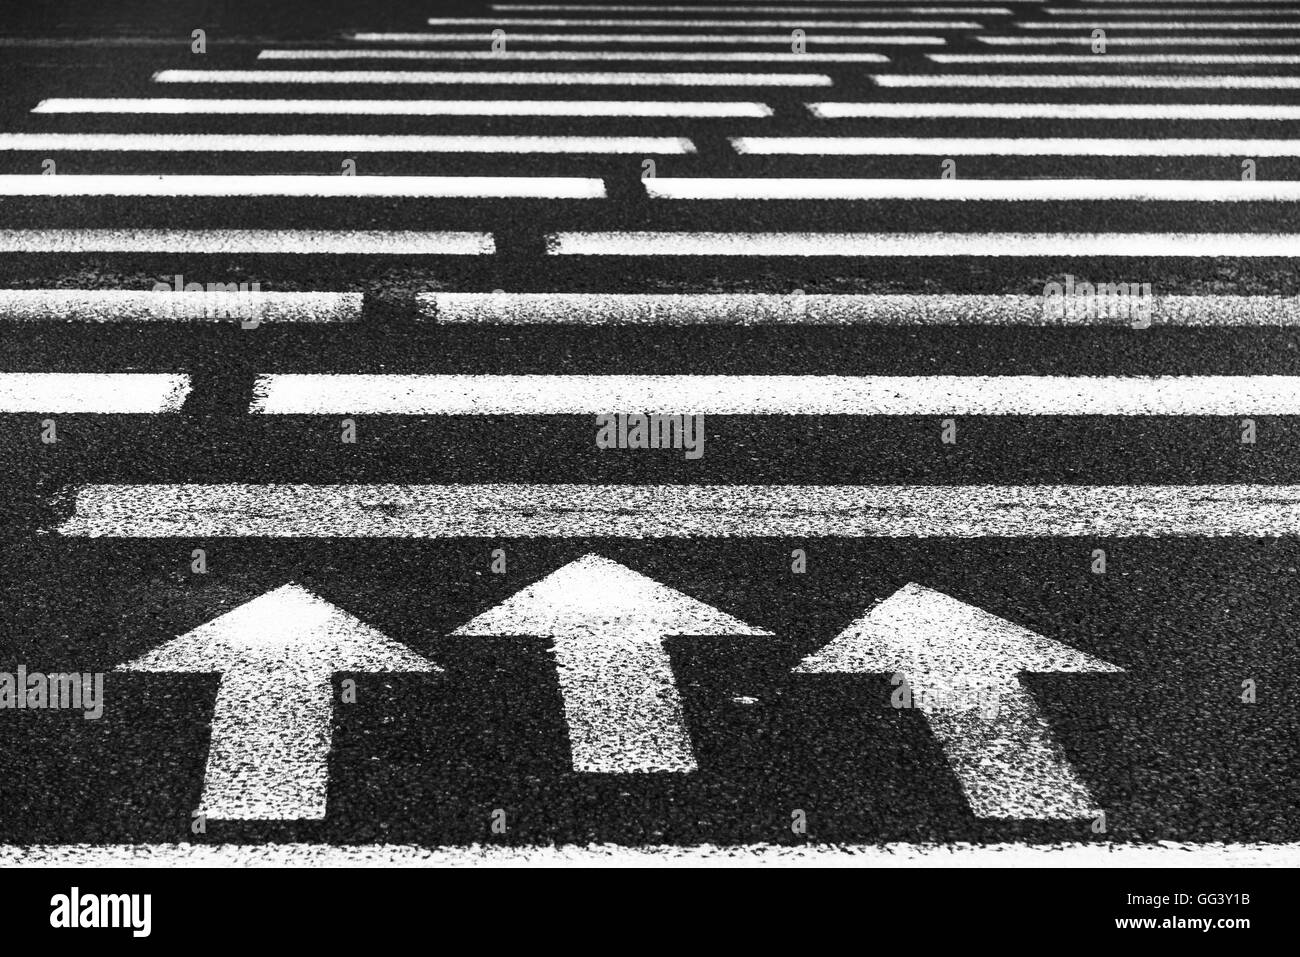 Attraversamento pedonale con la segnaletica stradale: frecce bianche e rettangoli su asfalto scuro Foto Stock